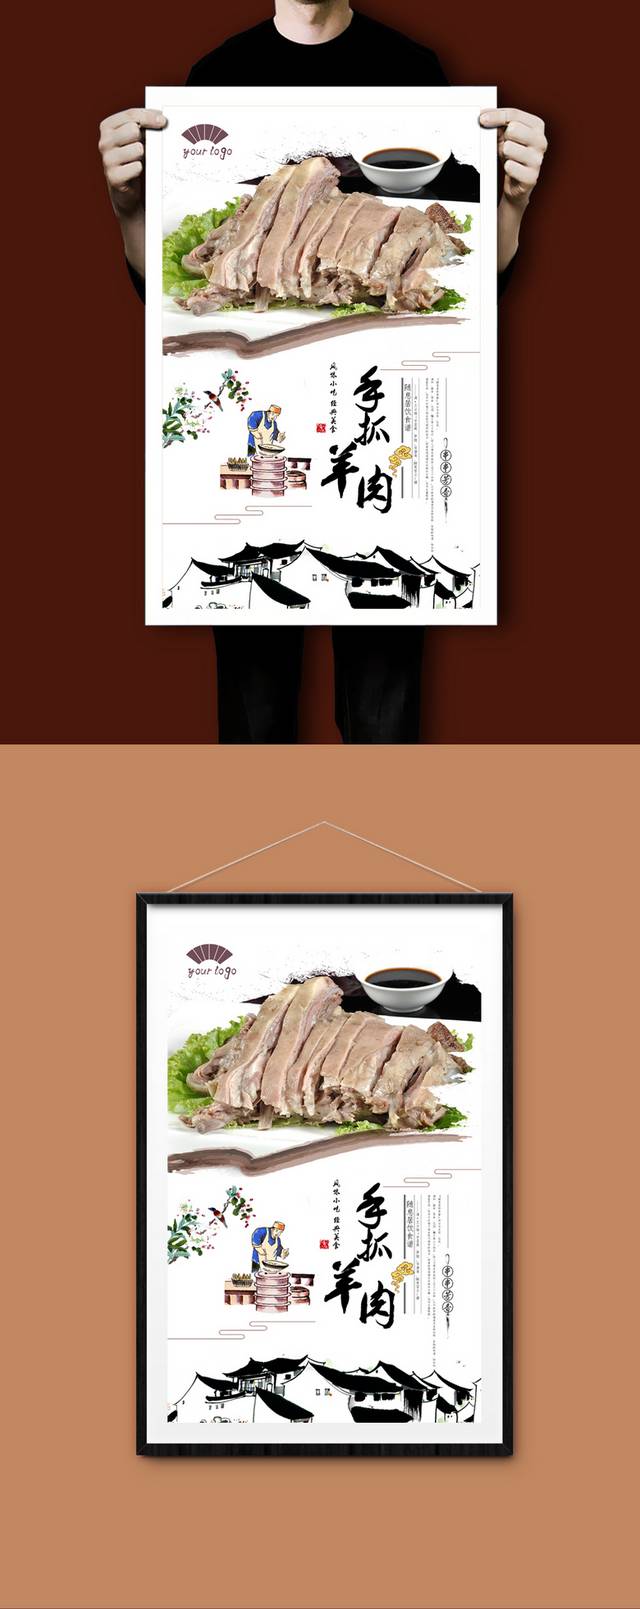 经典中国风手抓羊肉宣传海报设计psd